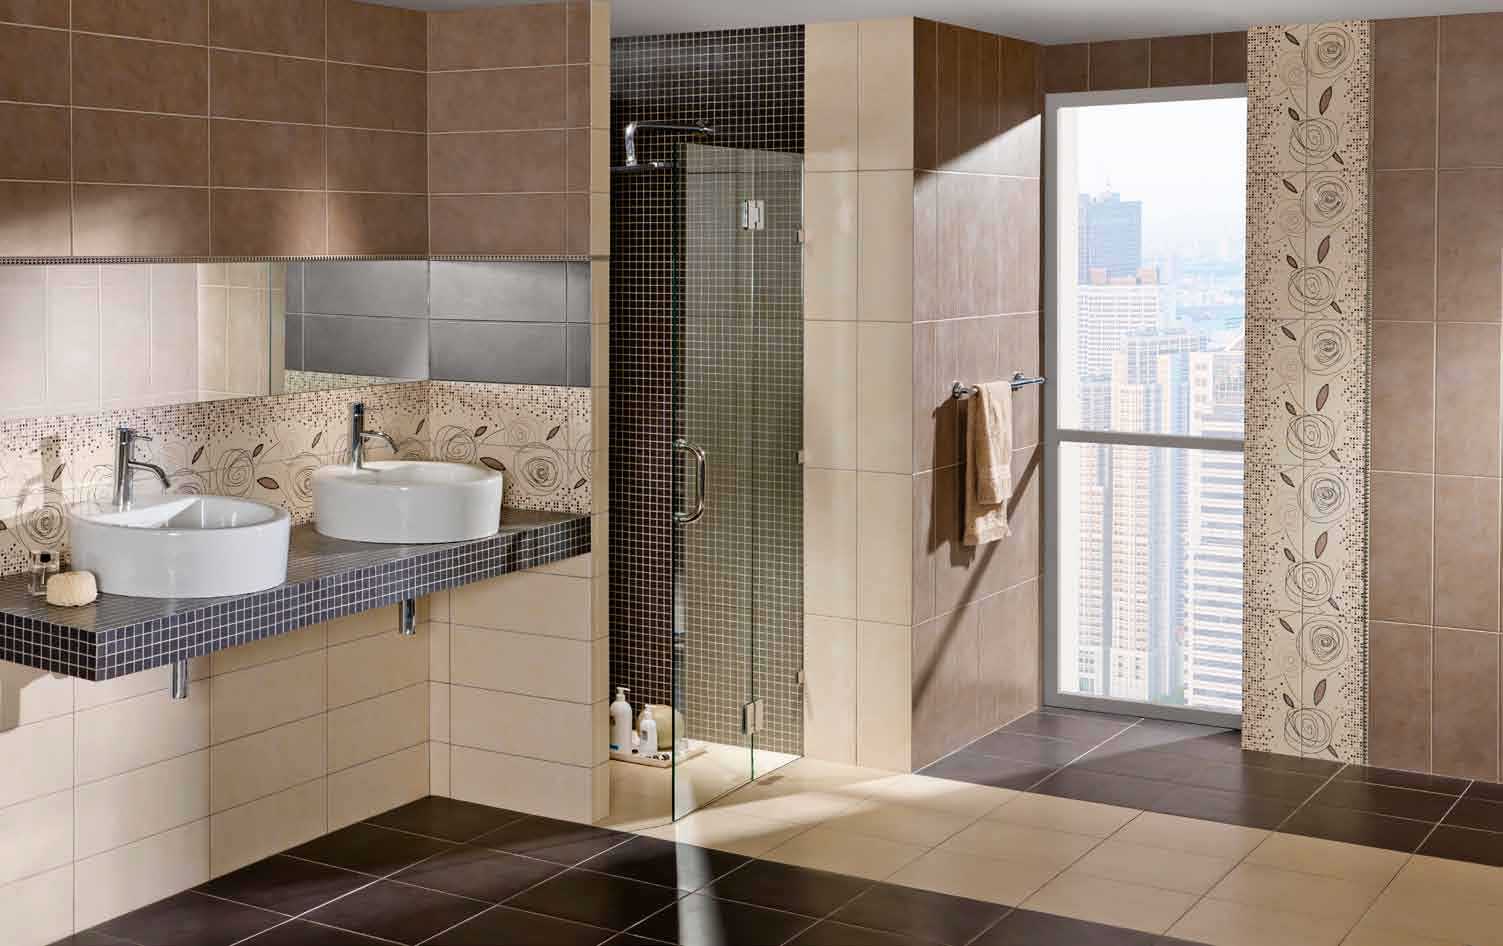 Как красиво сочетать плитку и мозаику в дизайне ванной комнаты